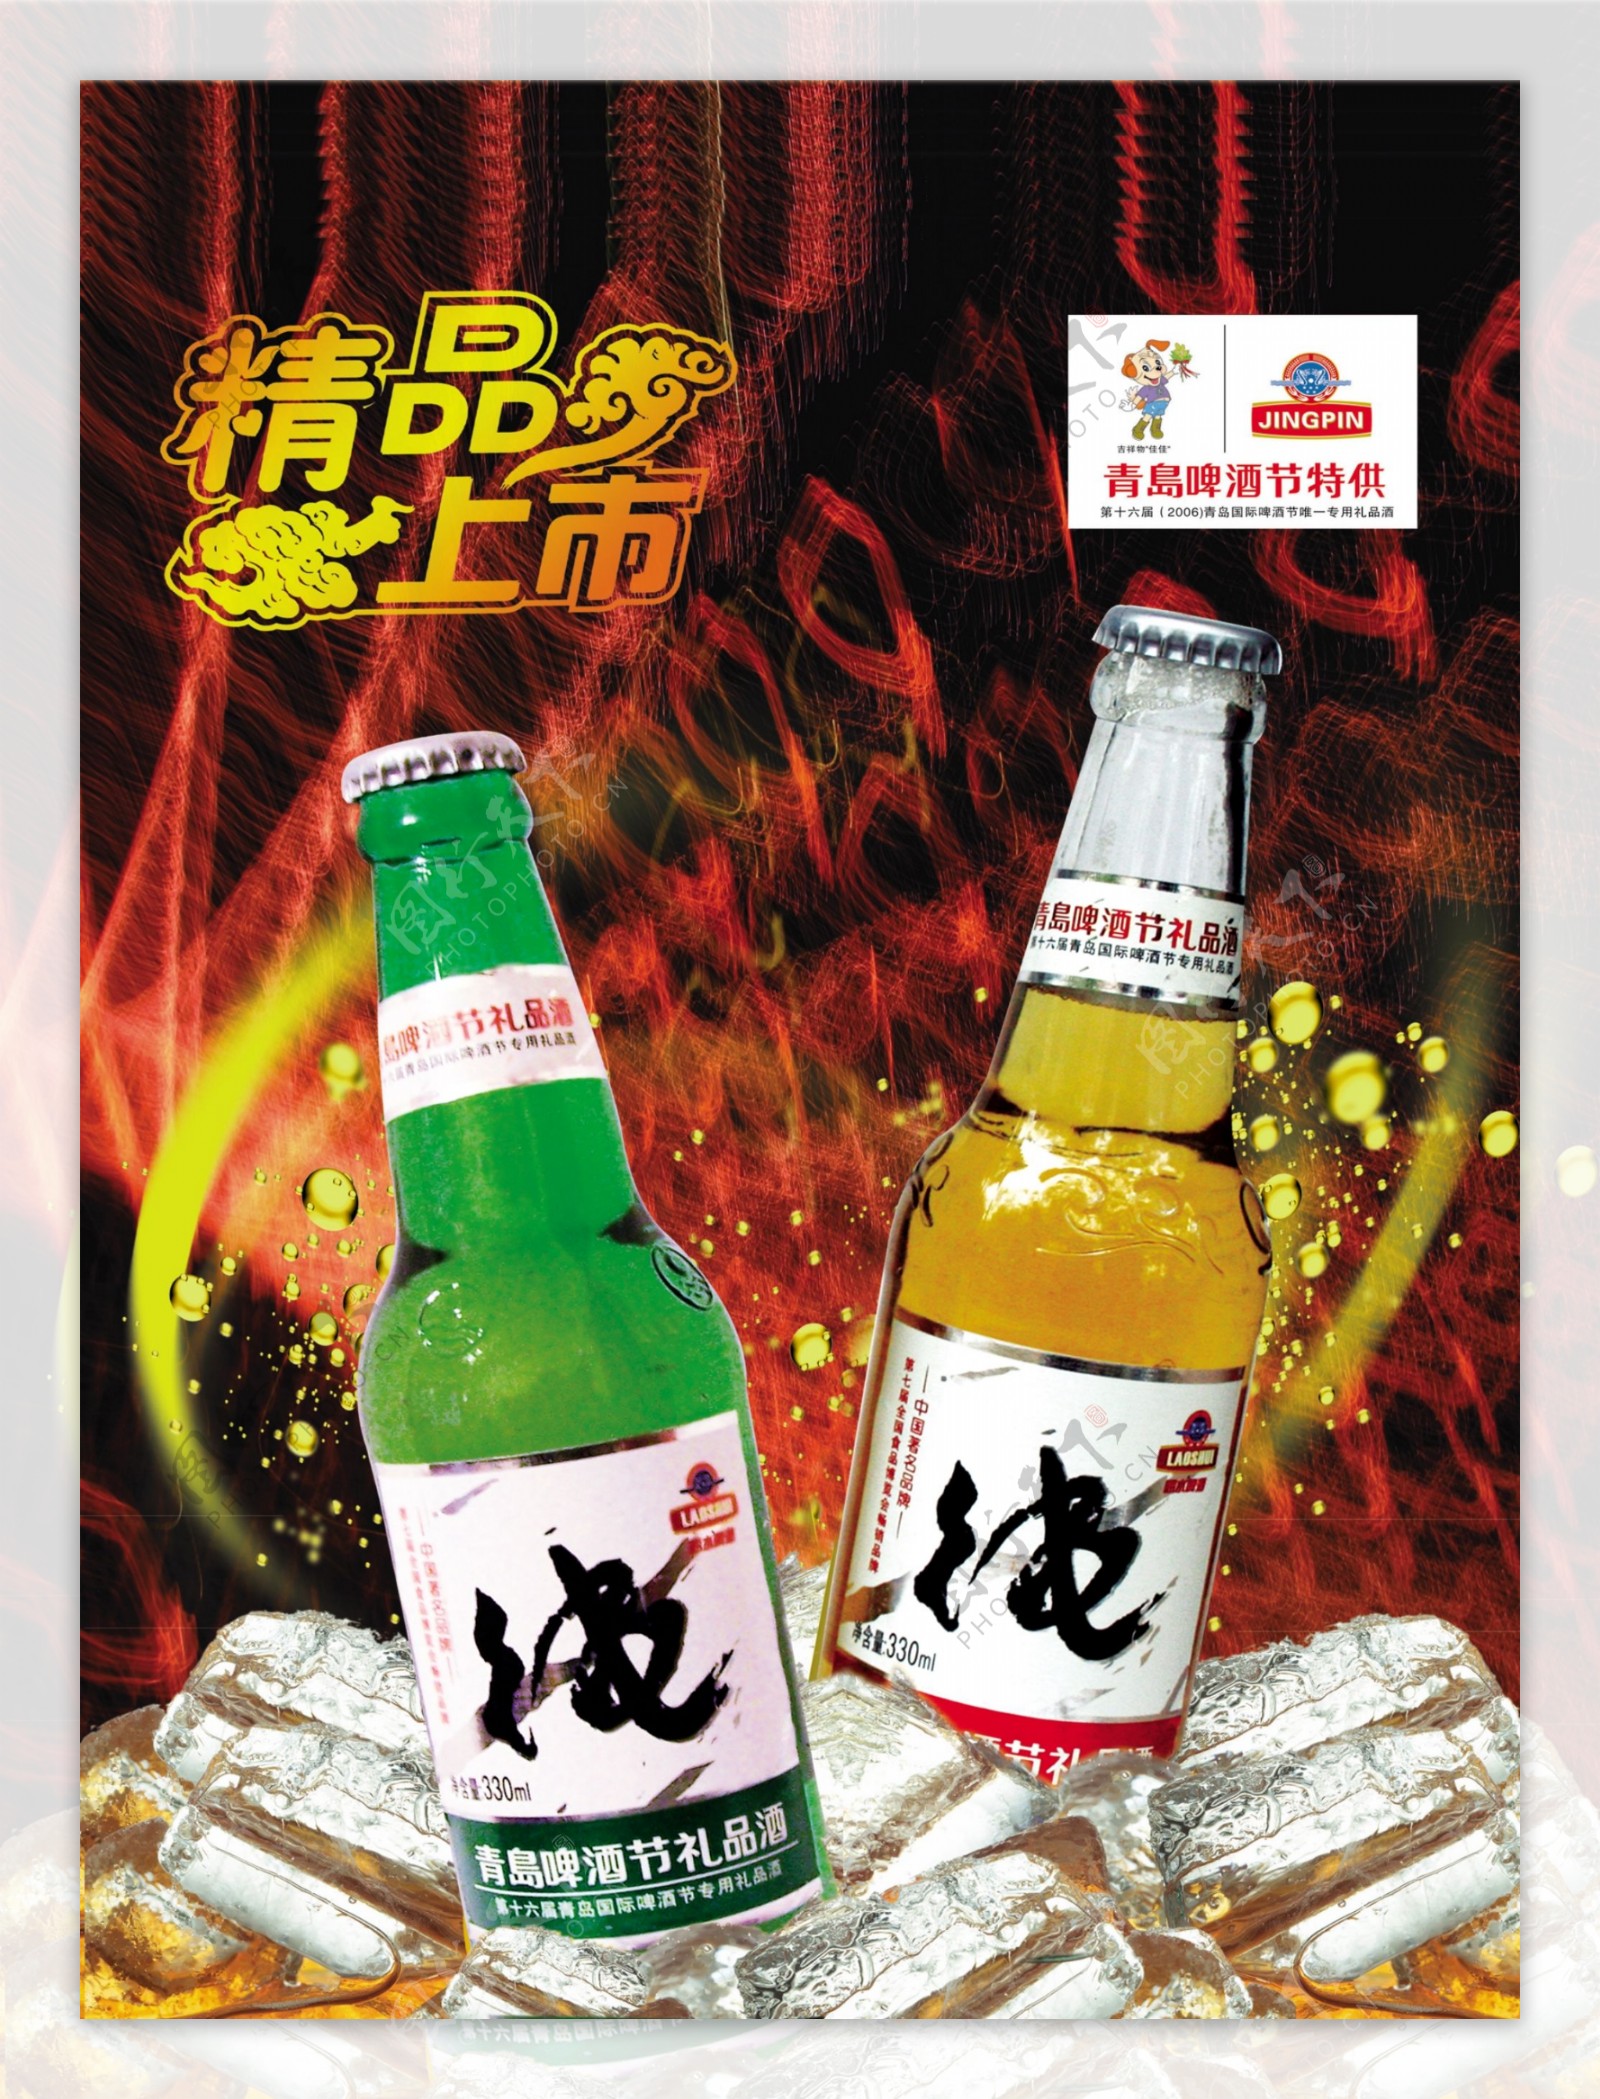 纯青岛啤酒海报广告设计素材